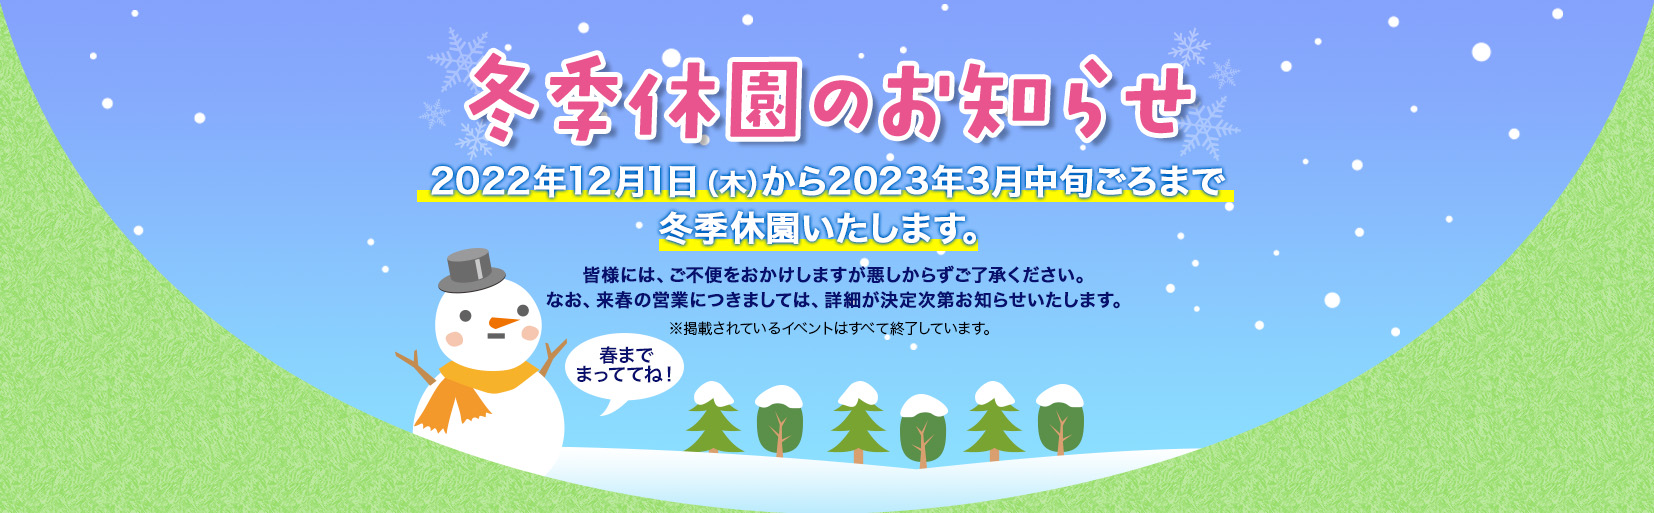 冬期休園のお知らせ 2022年12月1日(木)から2023年3月中旬ごろまで冬季休園いたします。